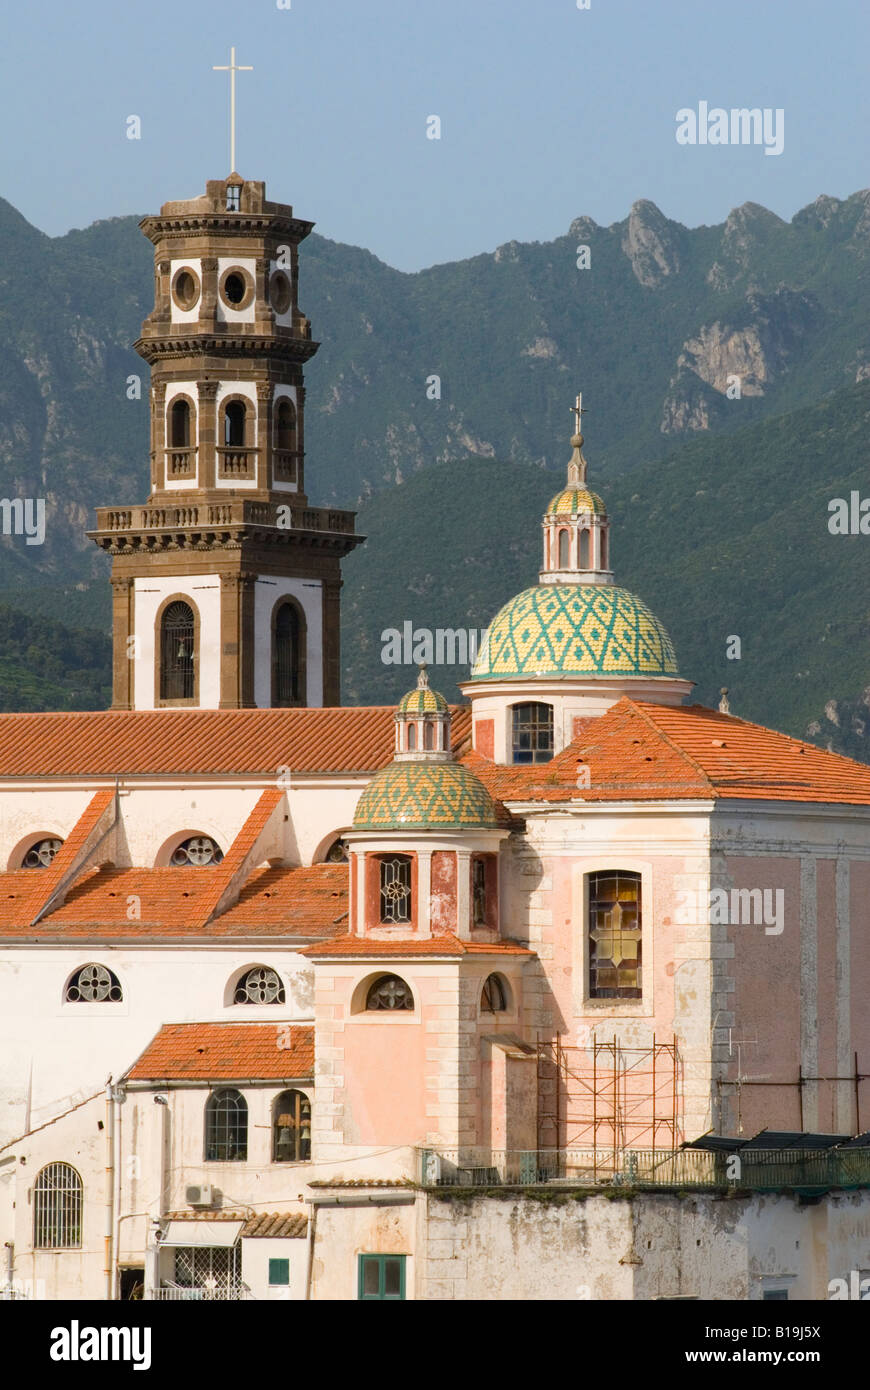 Views of the green domed church of the Collegiata di Santa Maria Maddalena Penitente, Atrani, Campania, Italy Stock Photo